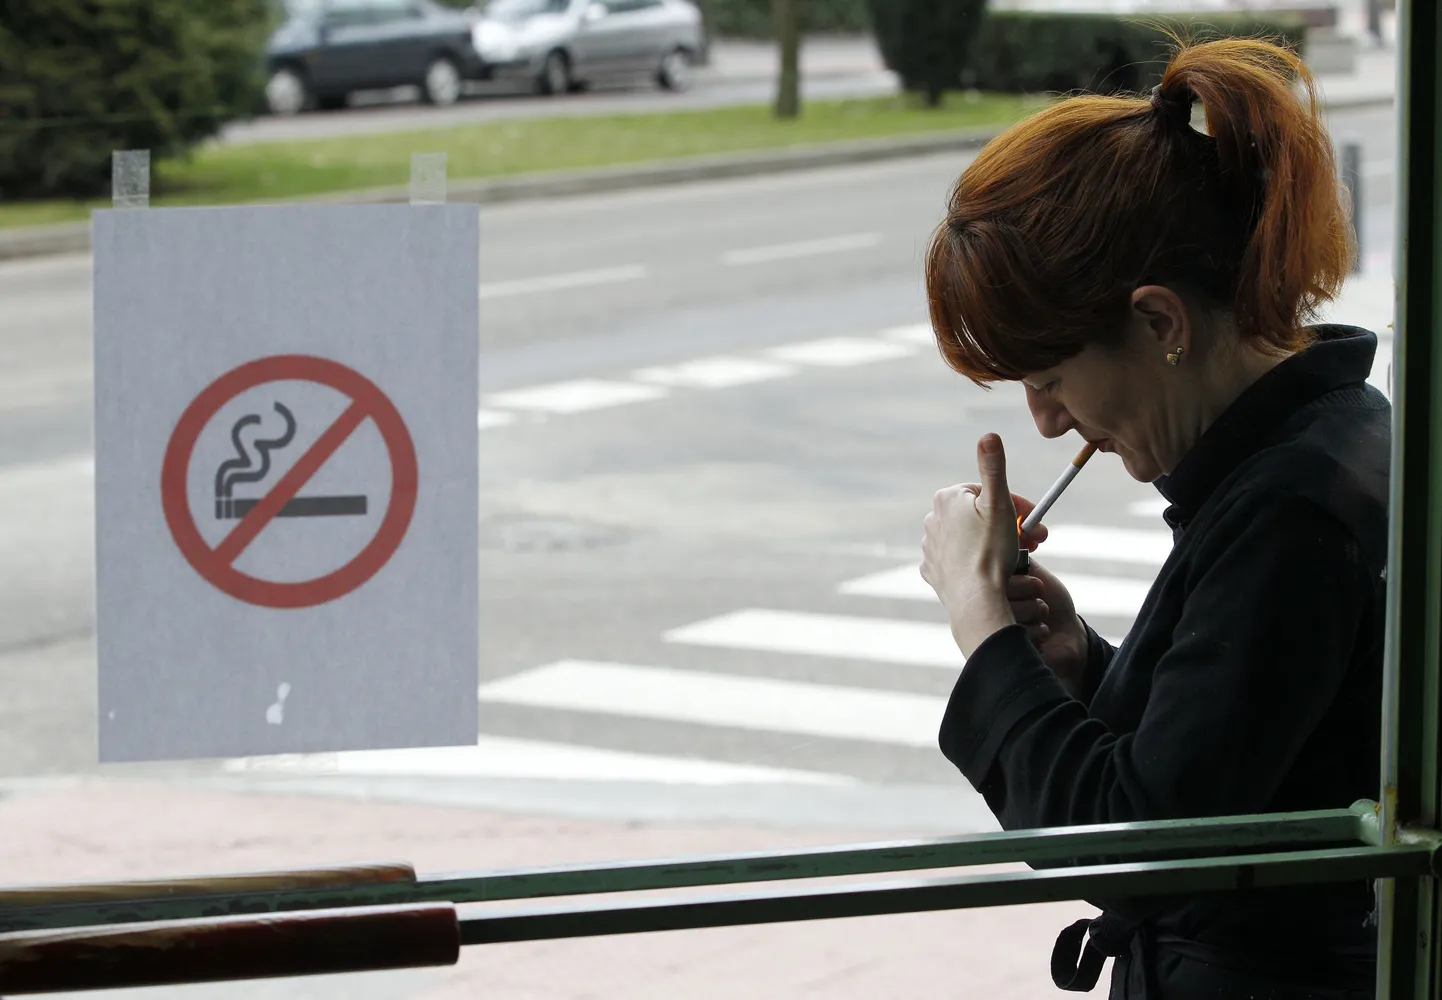 Naine süütab sigareti Burgoses ühe kohviku ees.